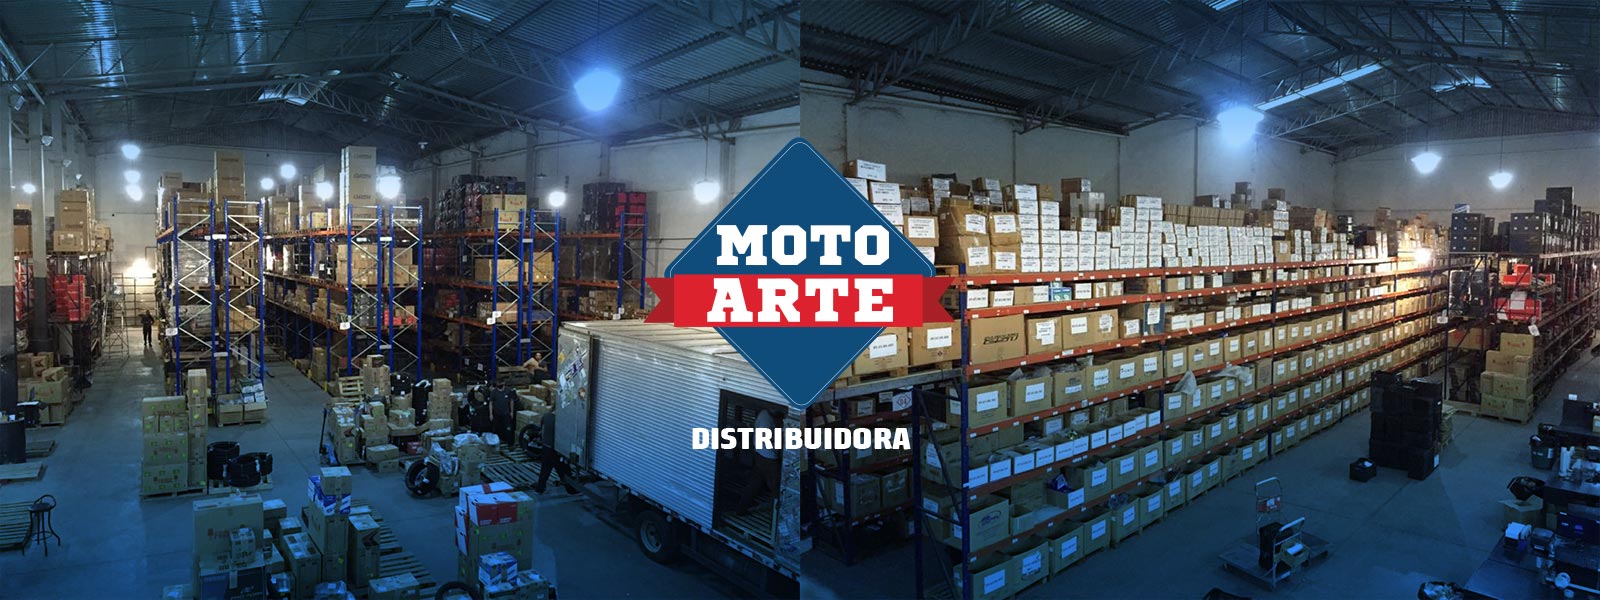 Centro de Distribuição Moto Arte 6